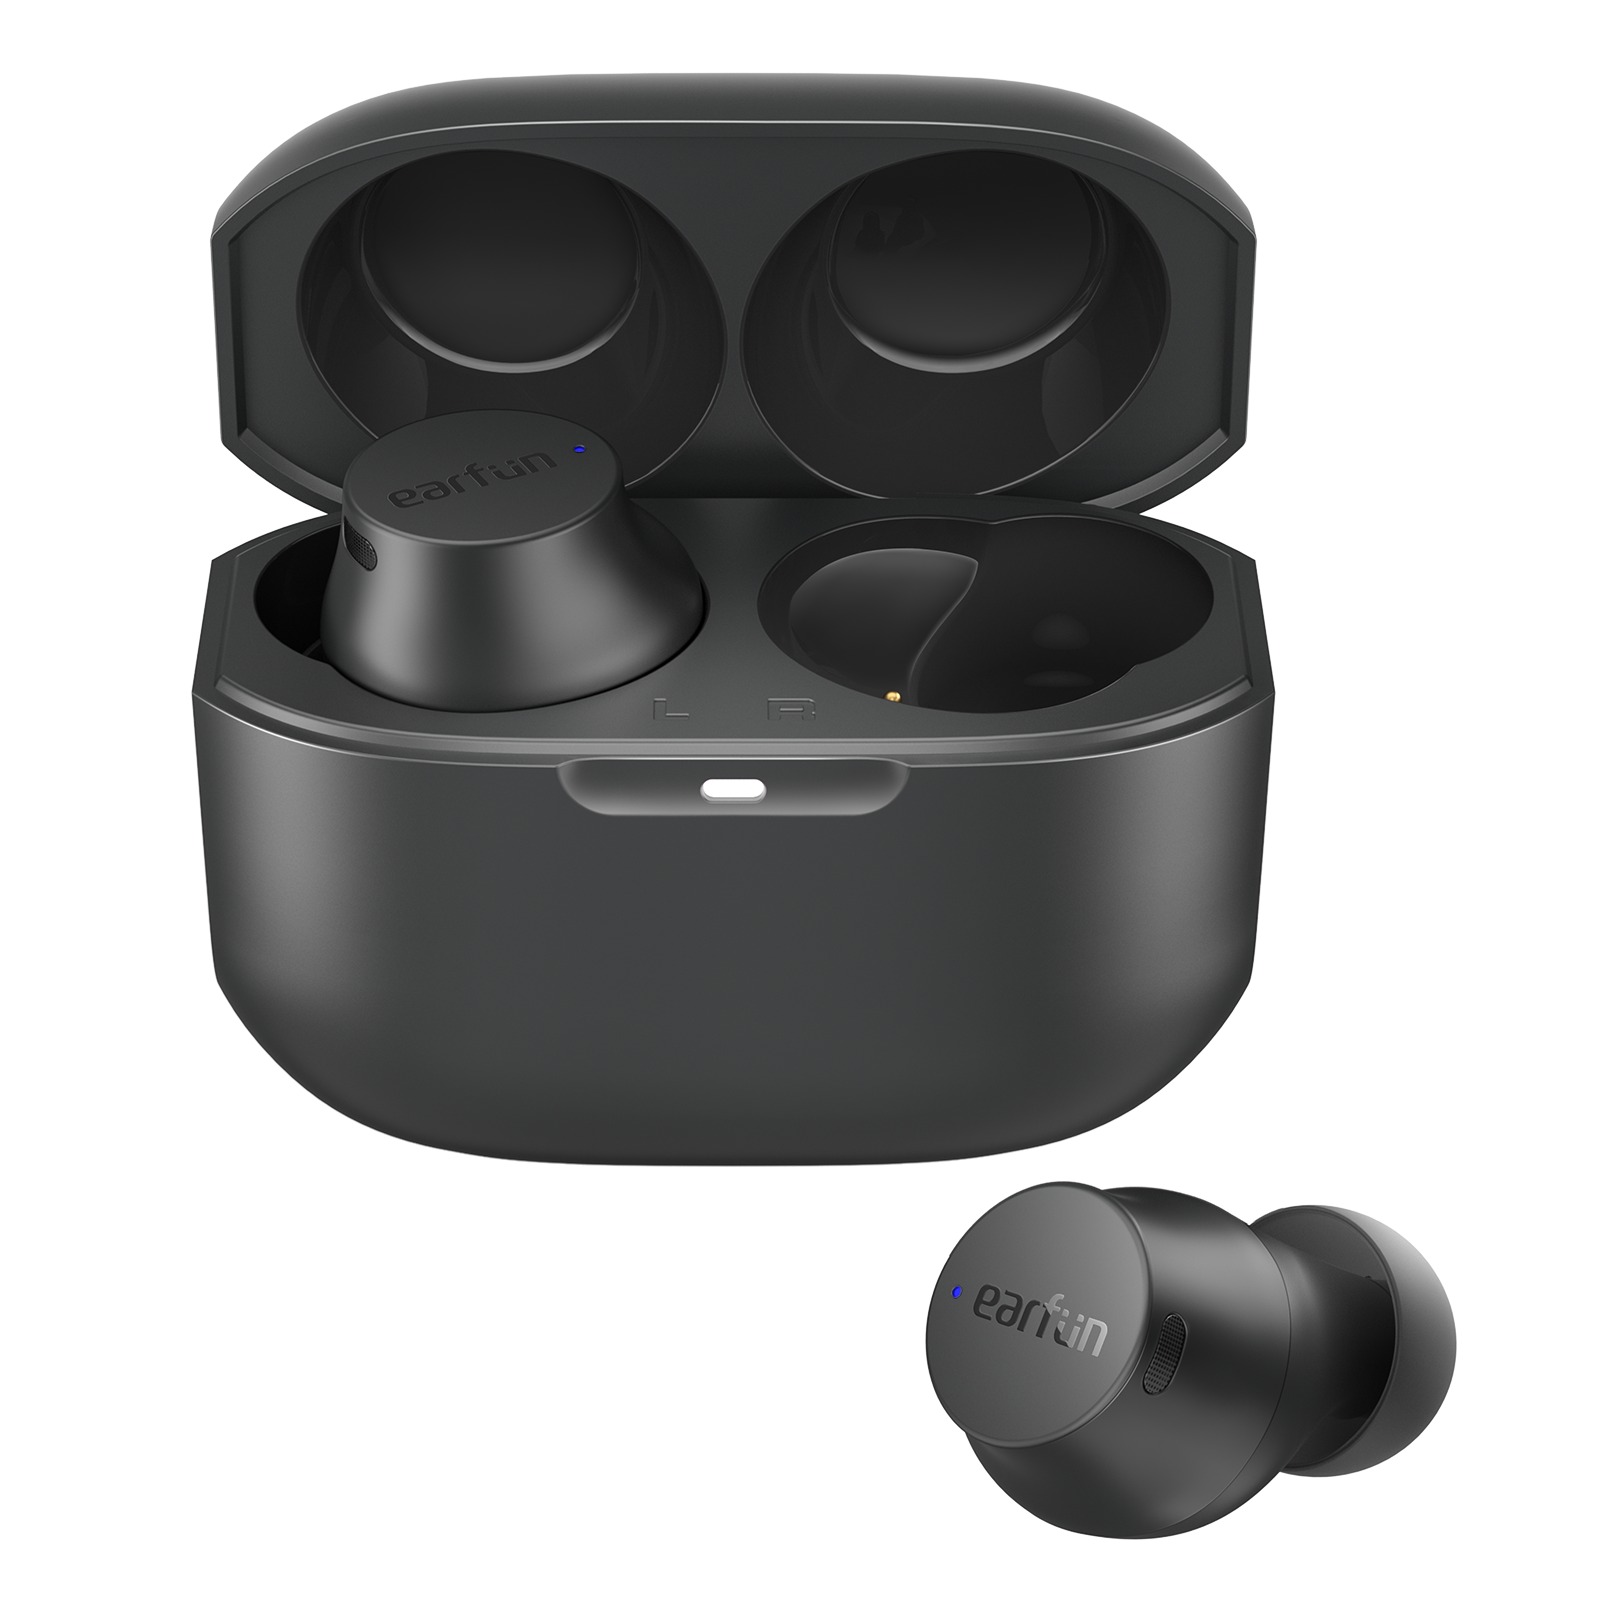 Tai nghe True Wireless EarFun Free Mini - Tai nghe siêu nhỏ, Bluetooth 5.0, sạc Type-C, Pin 24 giờ, Chống nước IPX7 - Hàng chính hãng